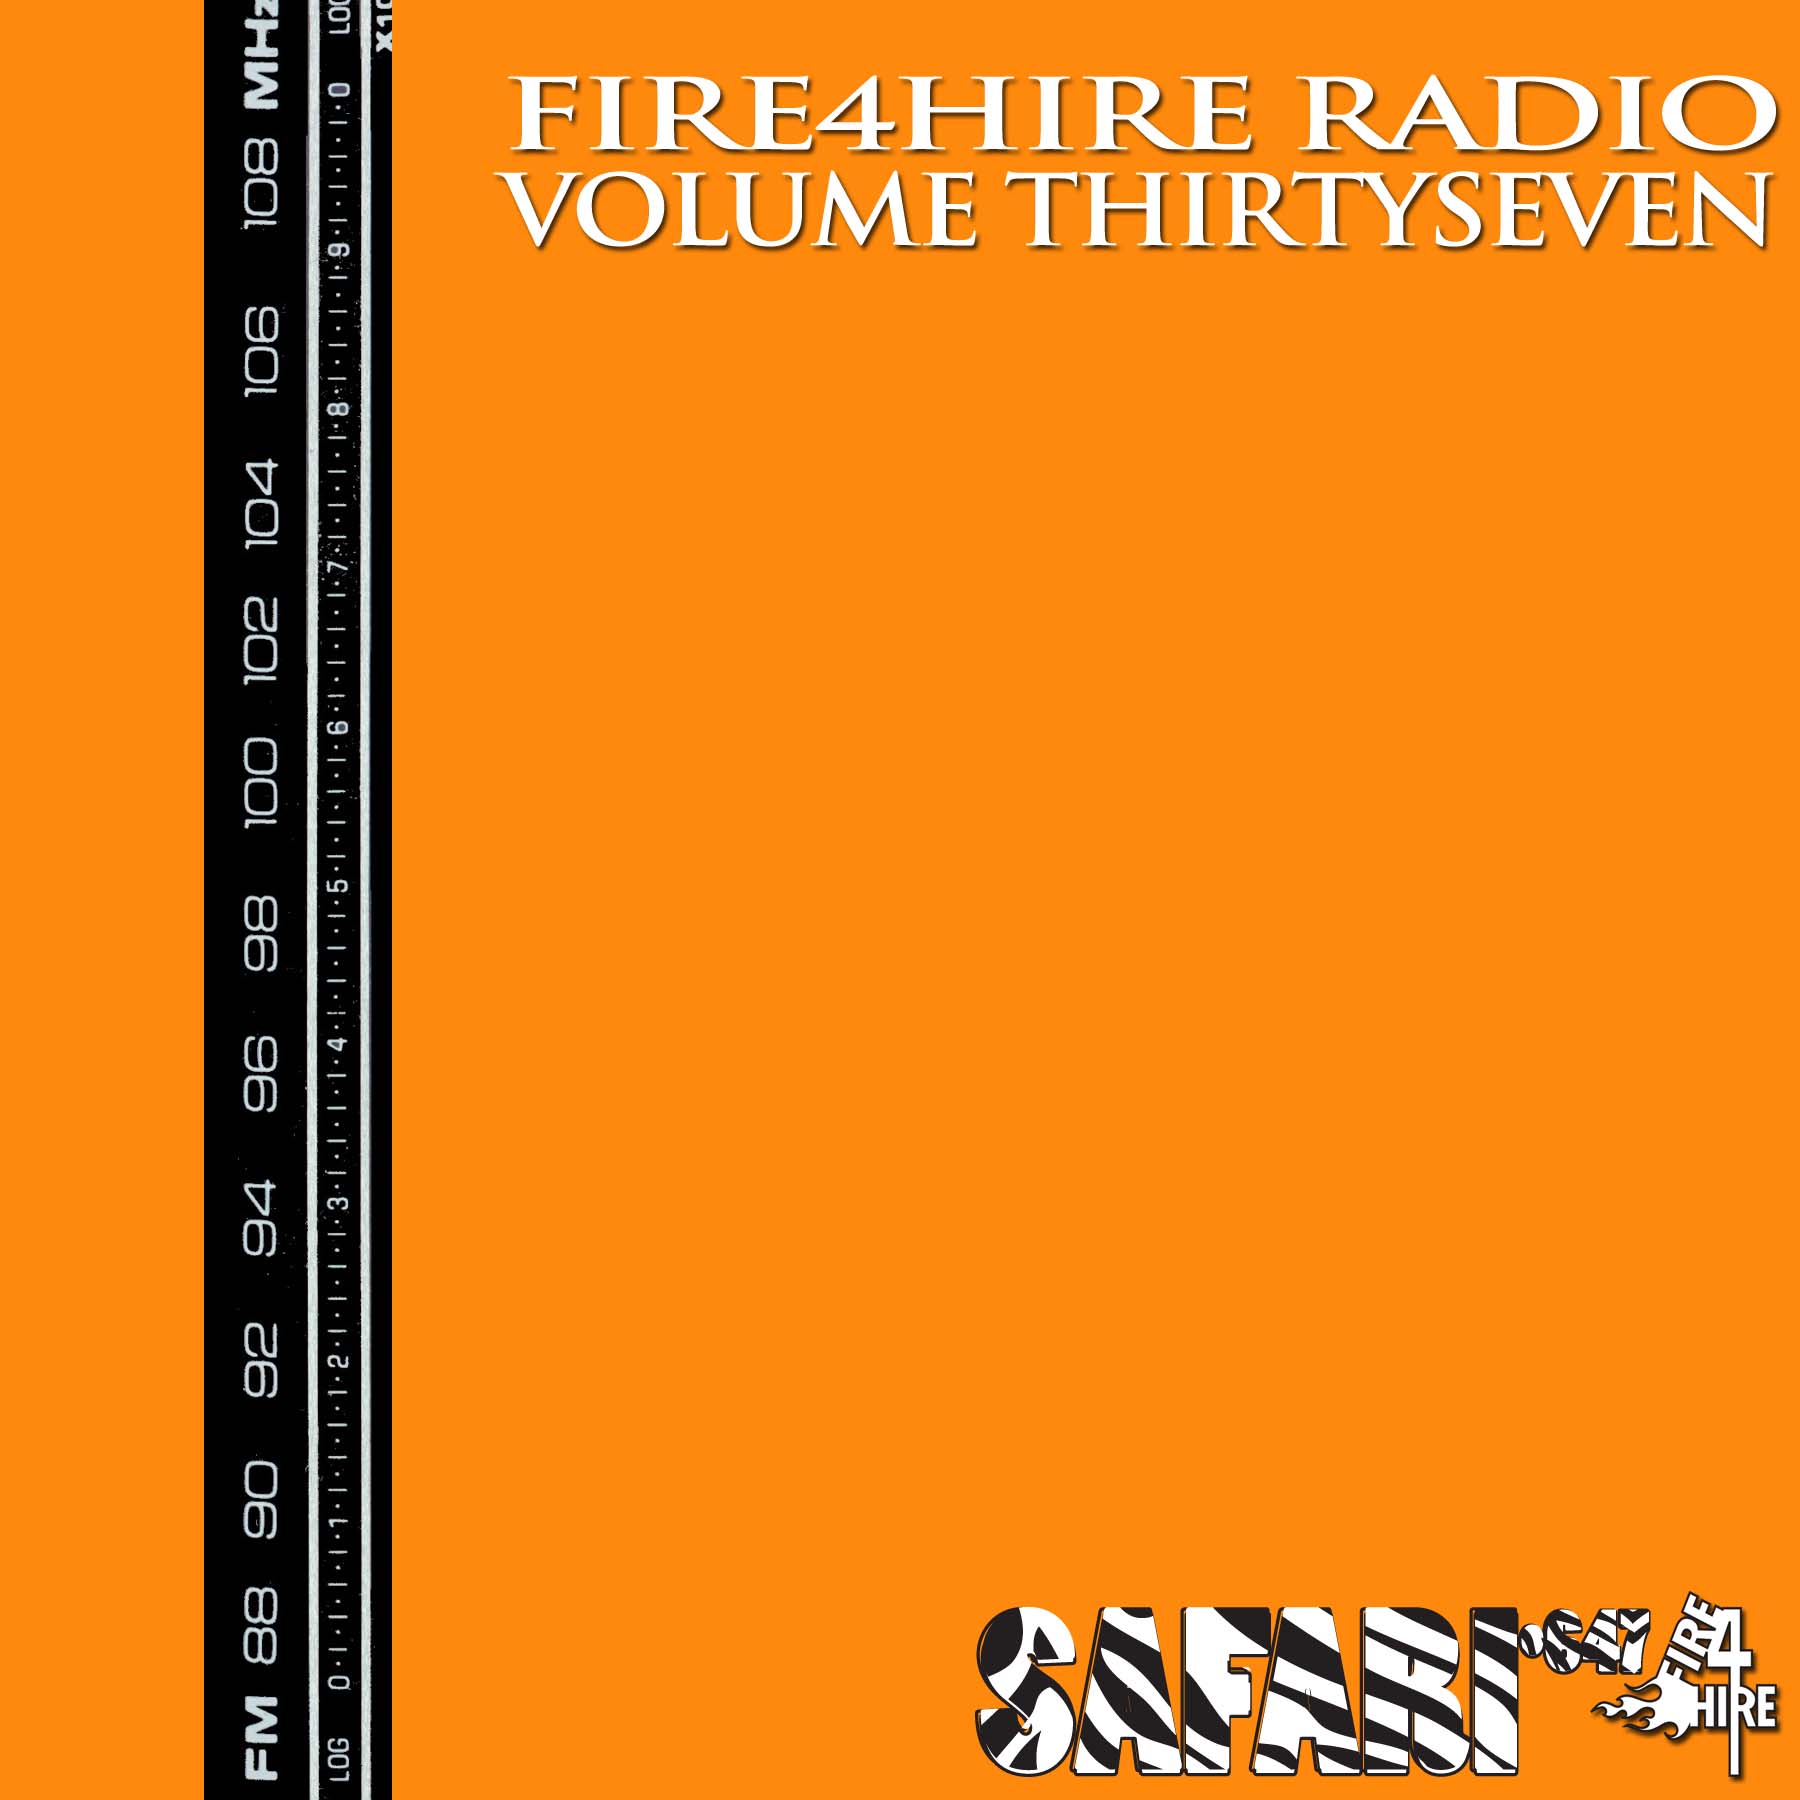 Fire 4 Hire Radio 37 by Safari647